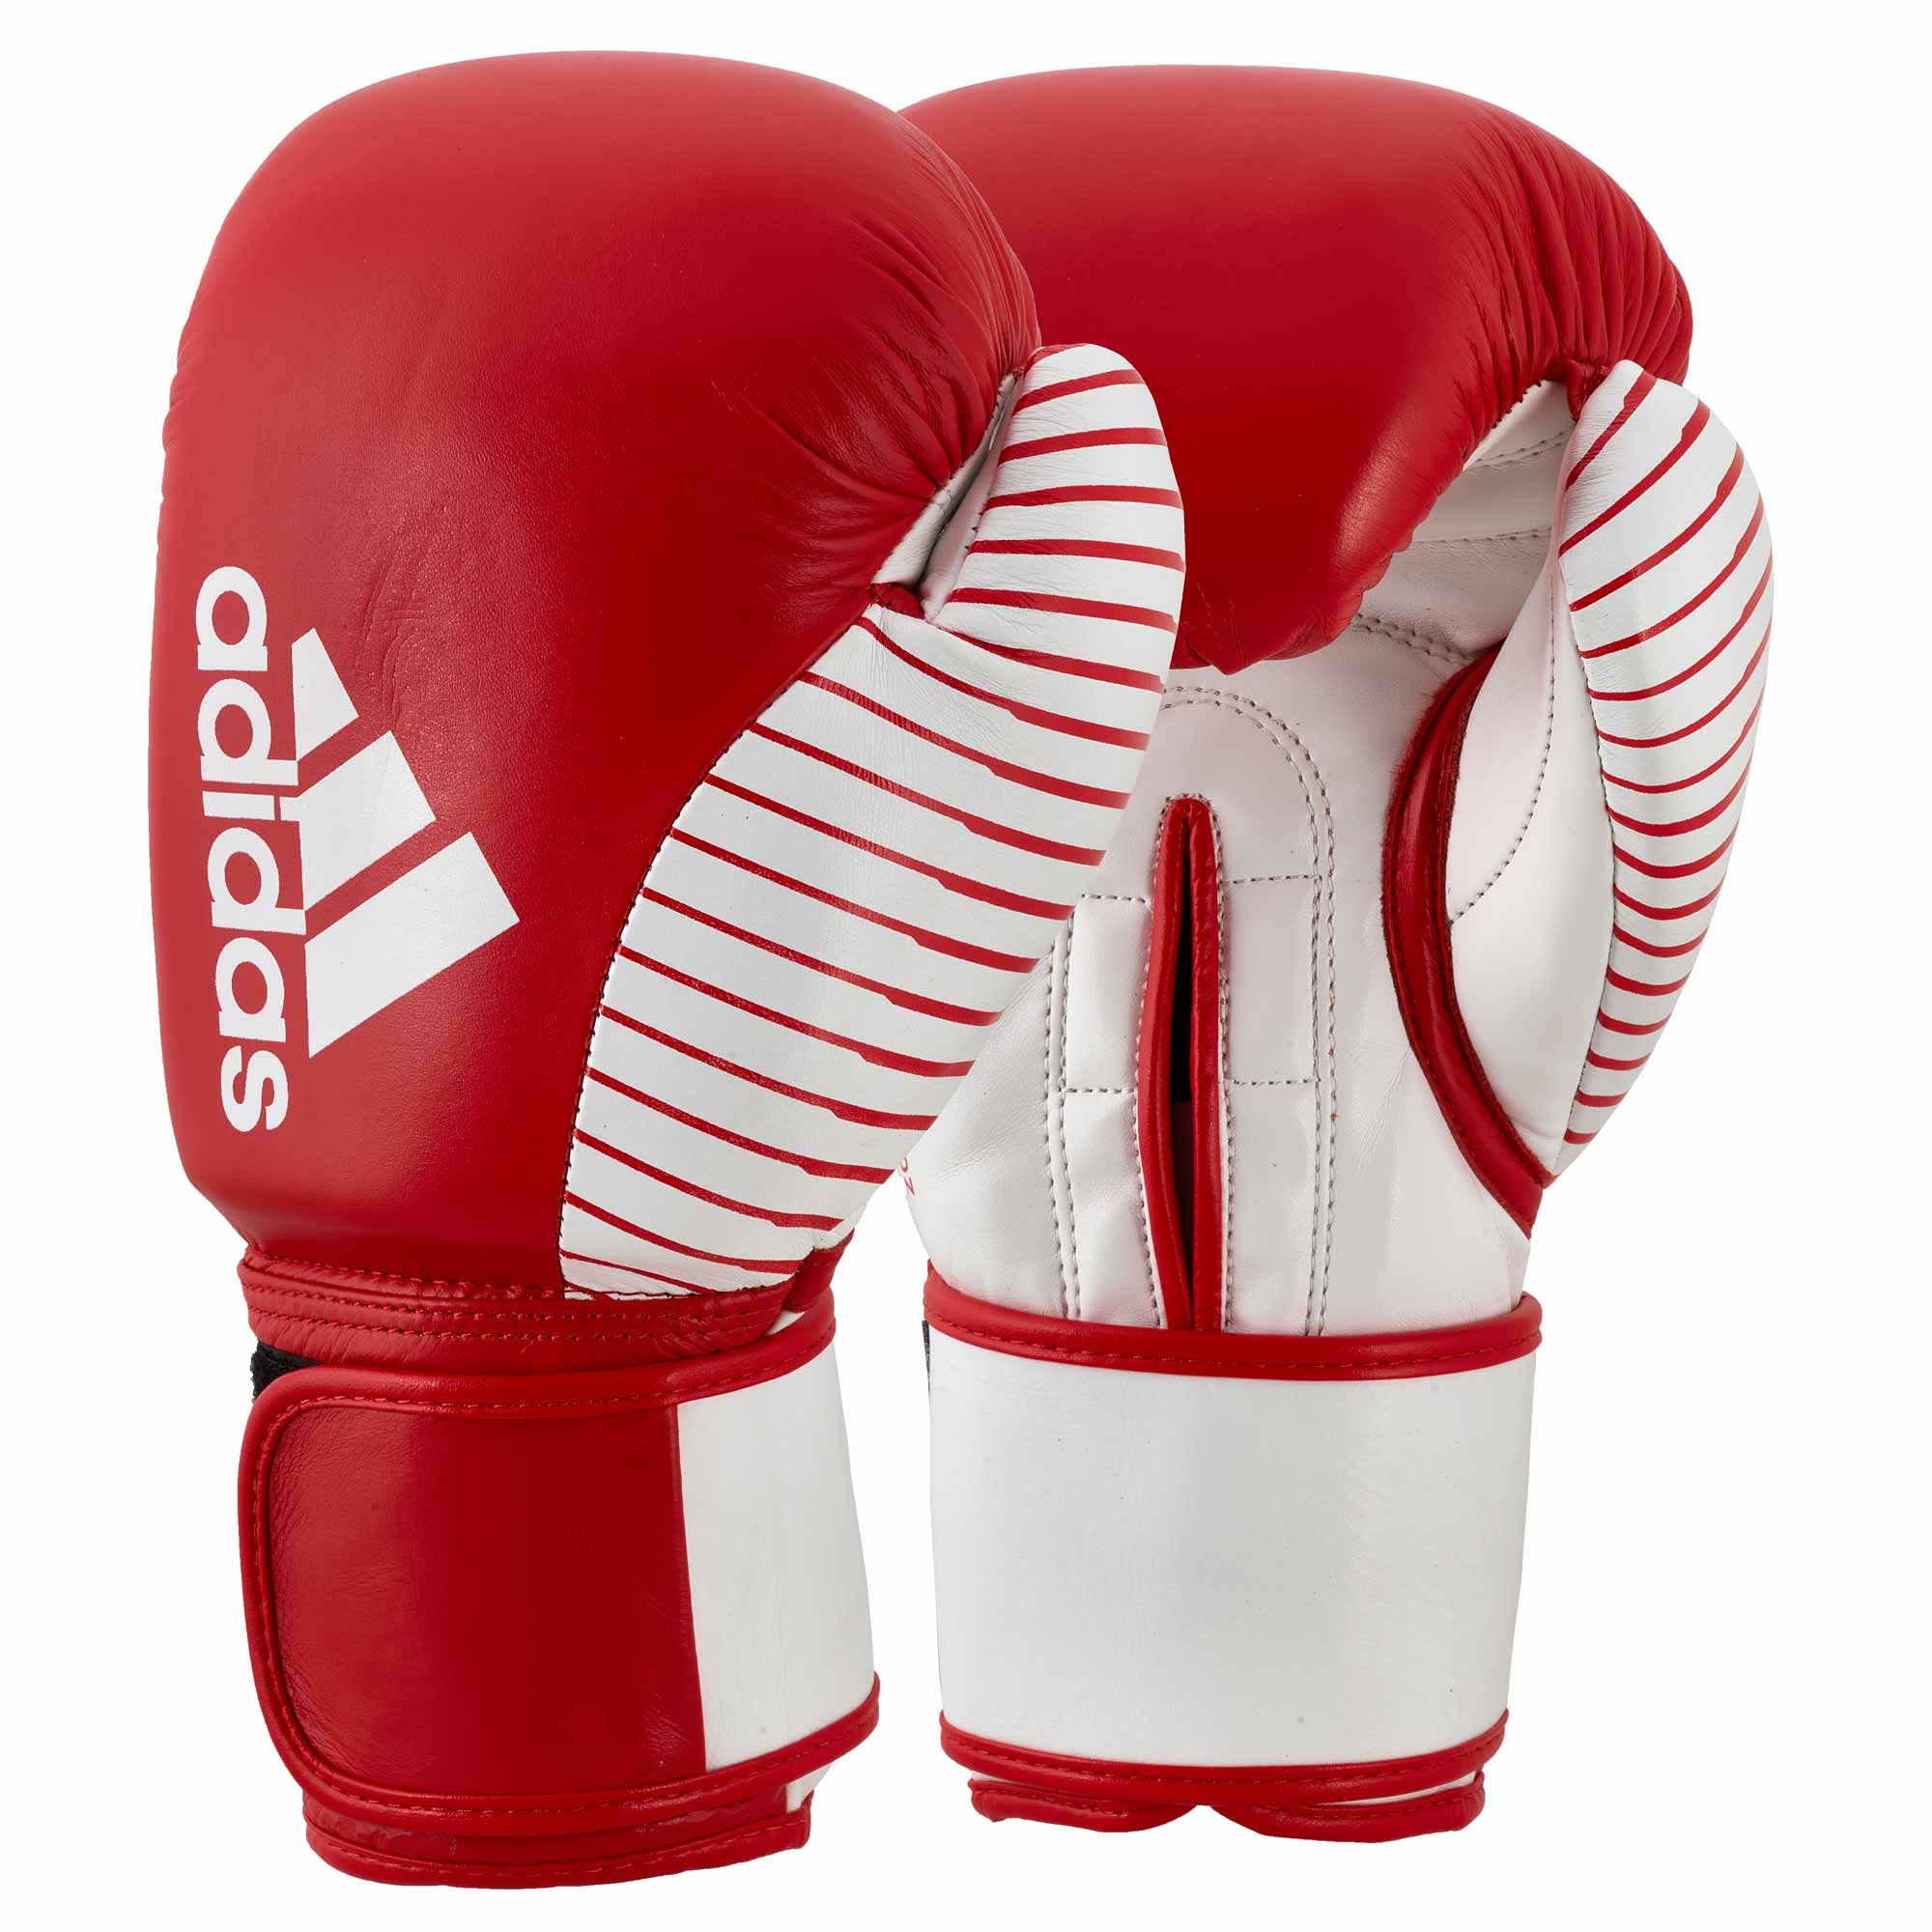 Adidas Kickboxing Wettkampfhandschuh red/white